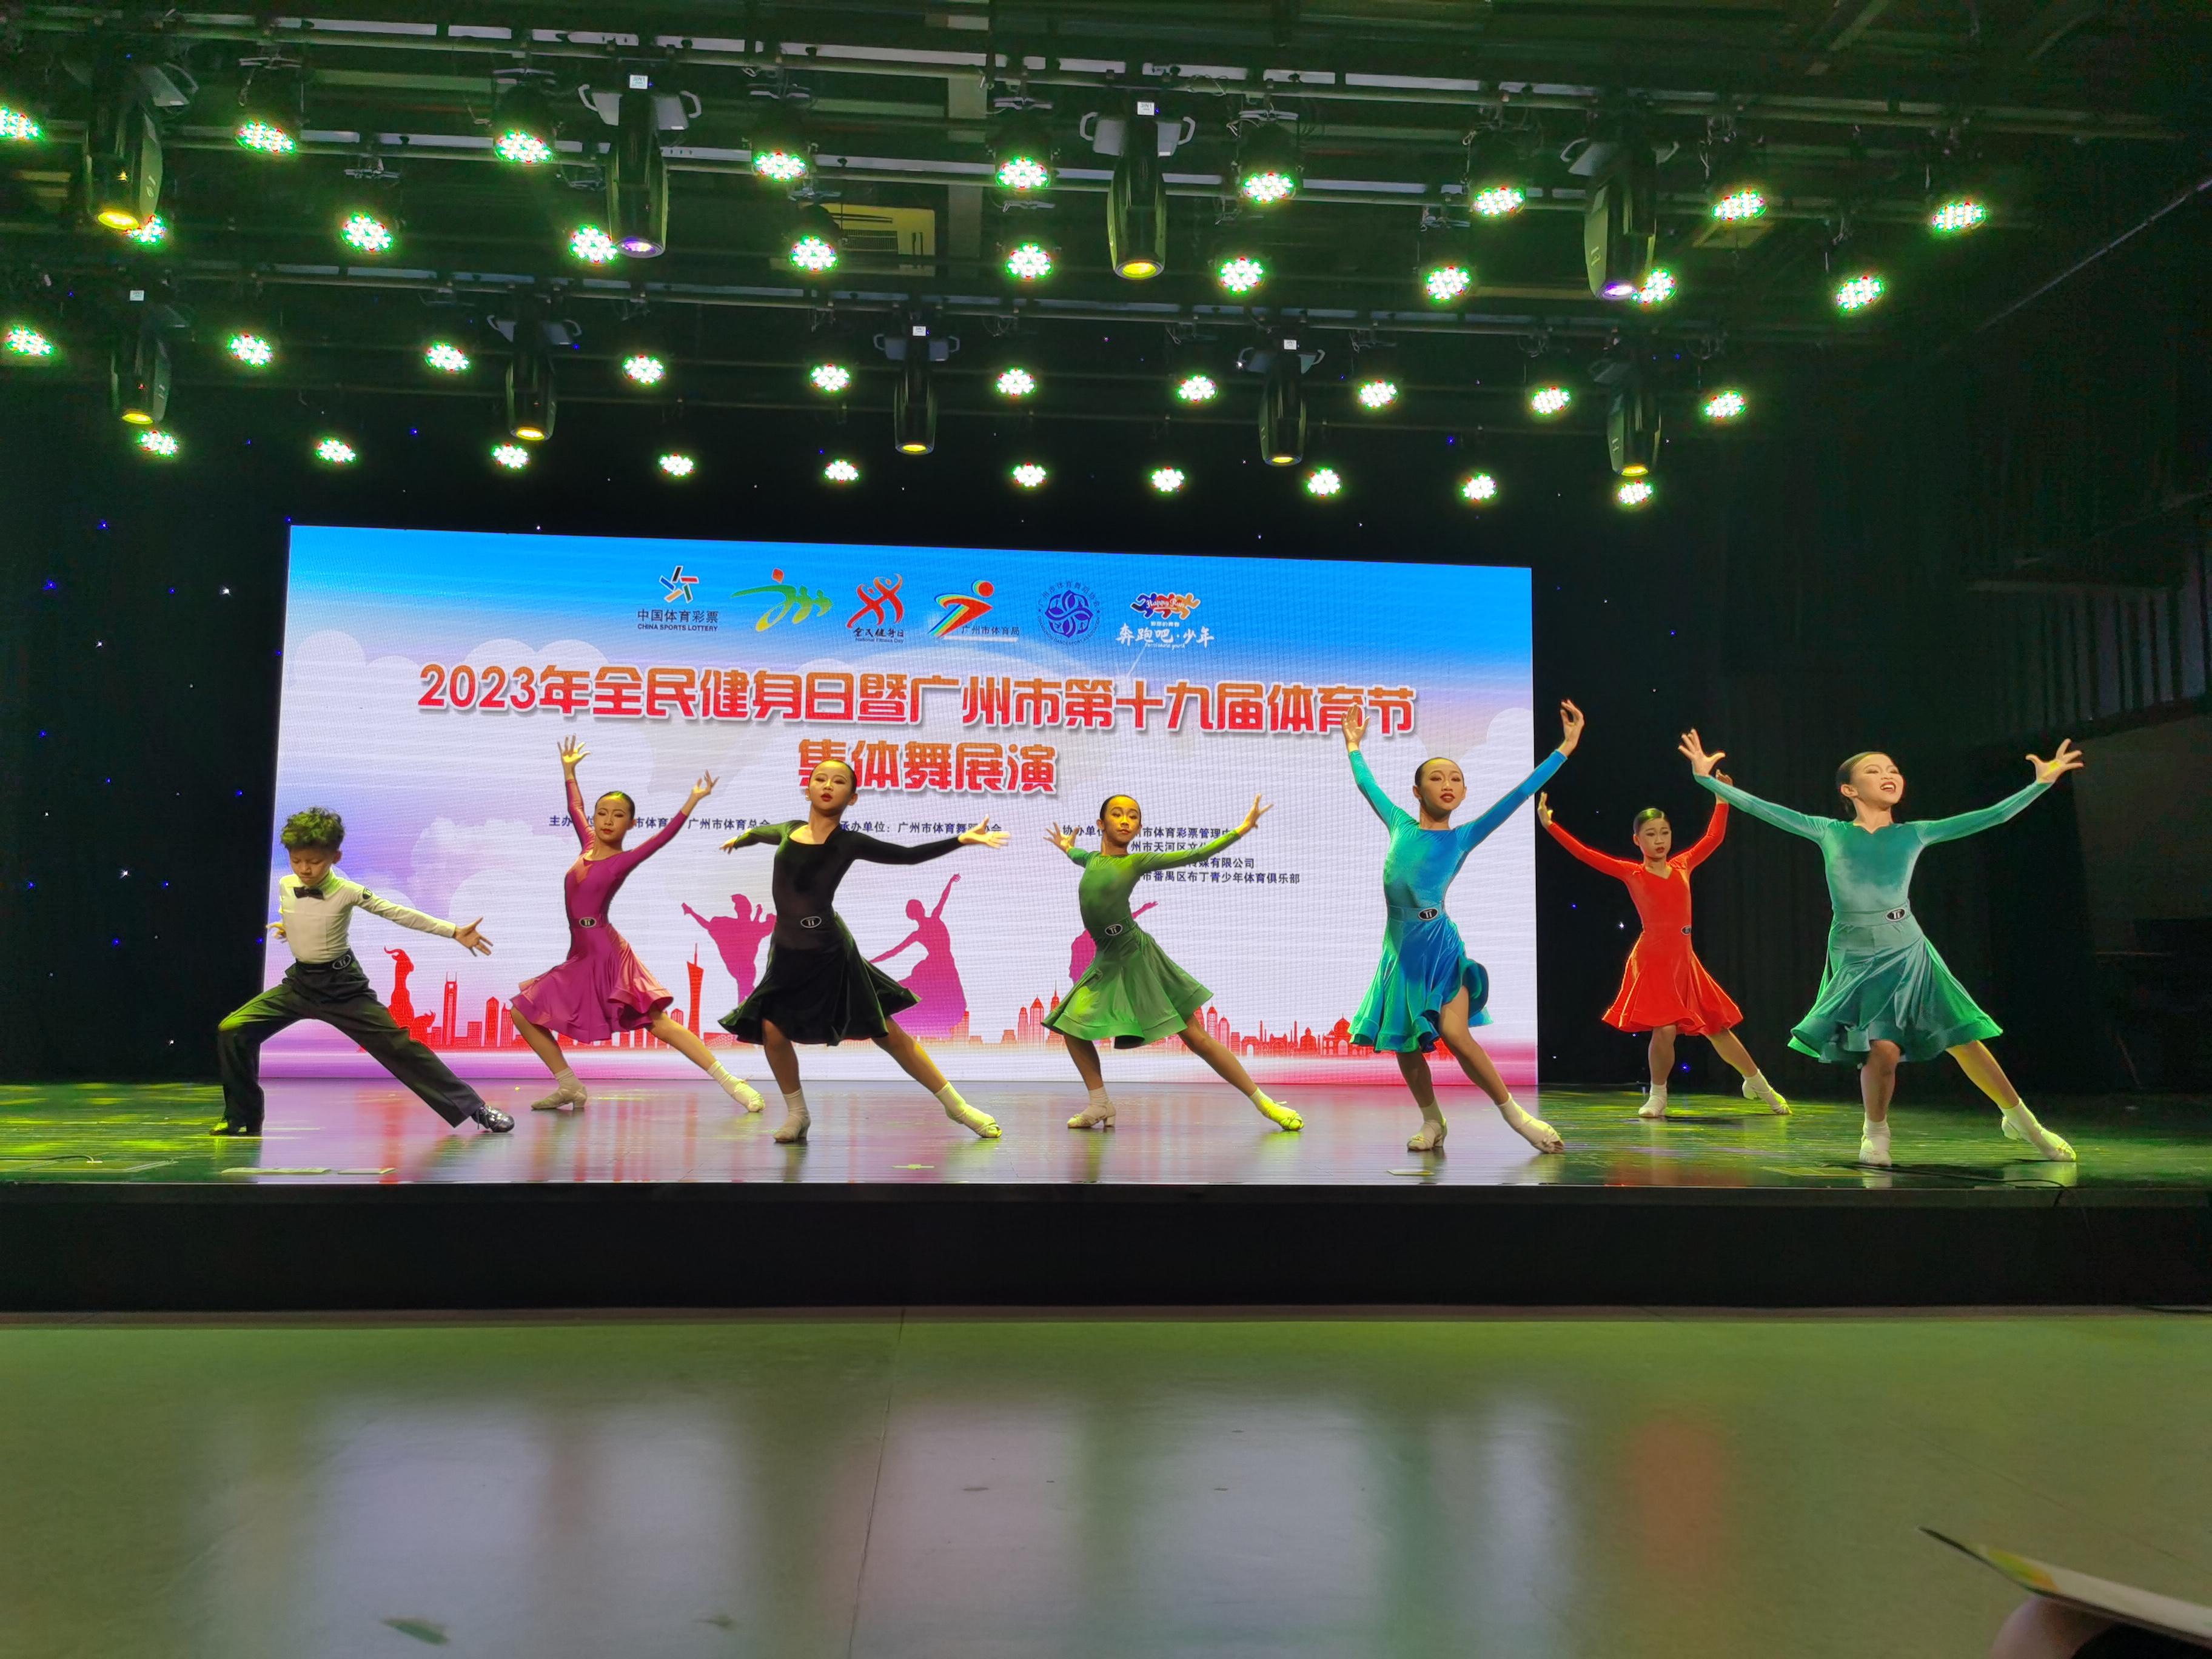 2023年全民健身日暨广州市第十九届体育节集体舞展演活动圆满结束